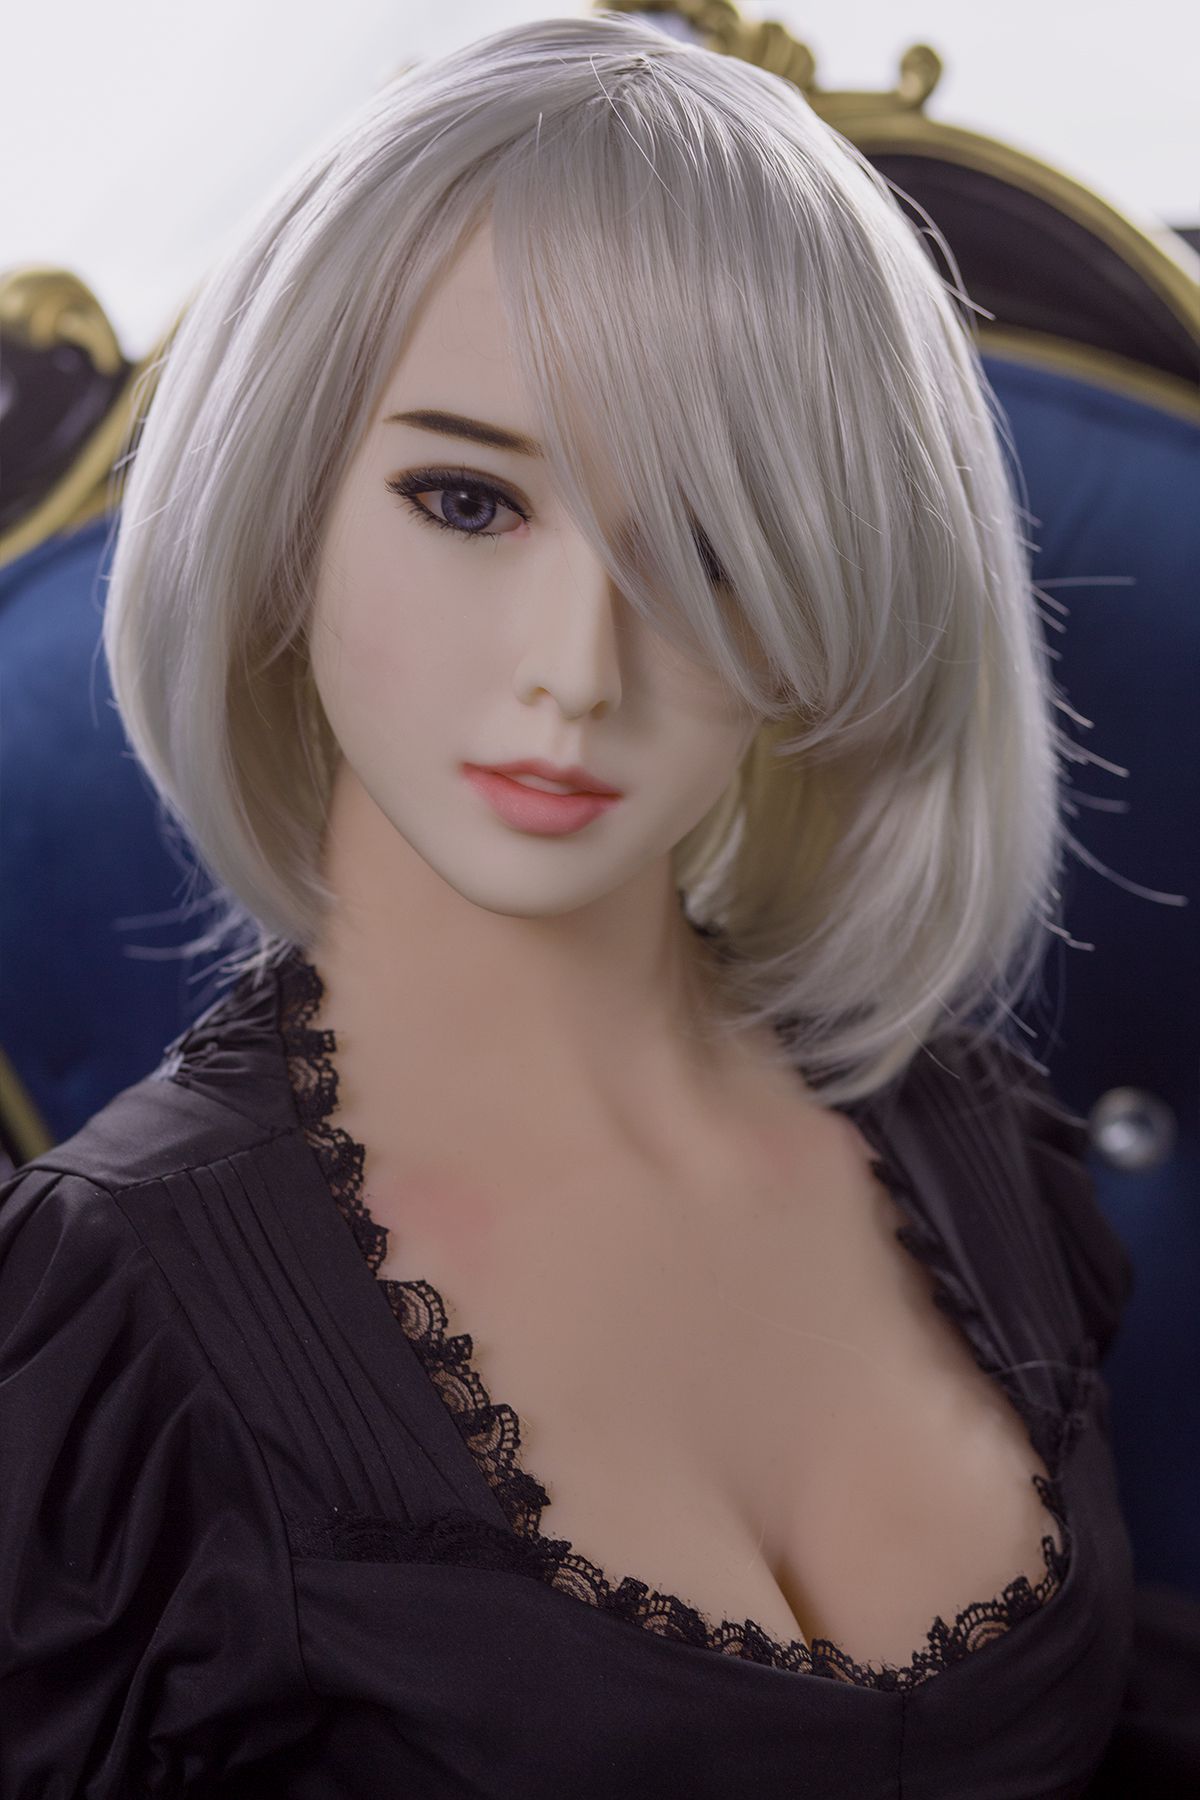 Silbergraue Haar Real dolls